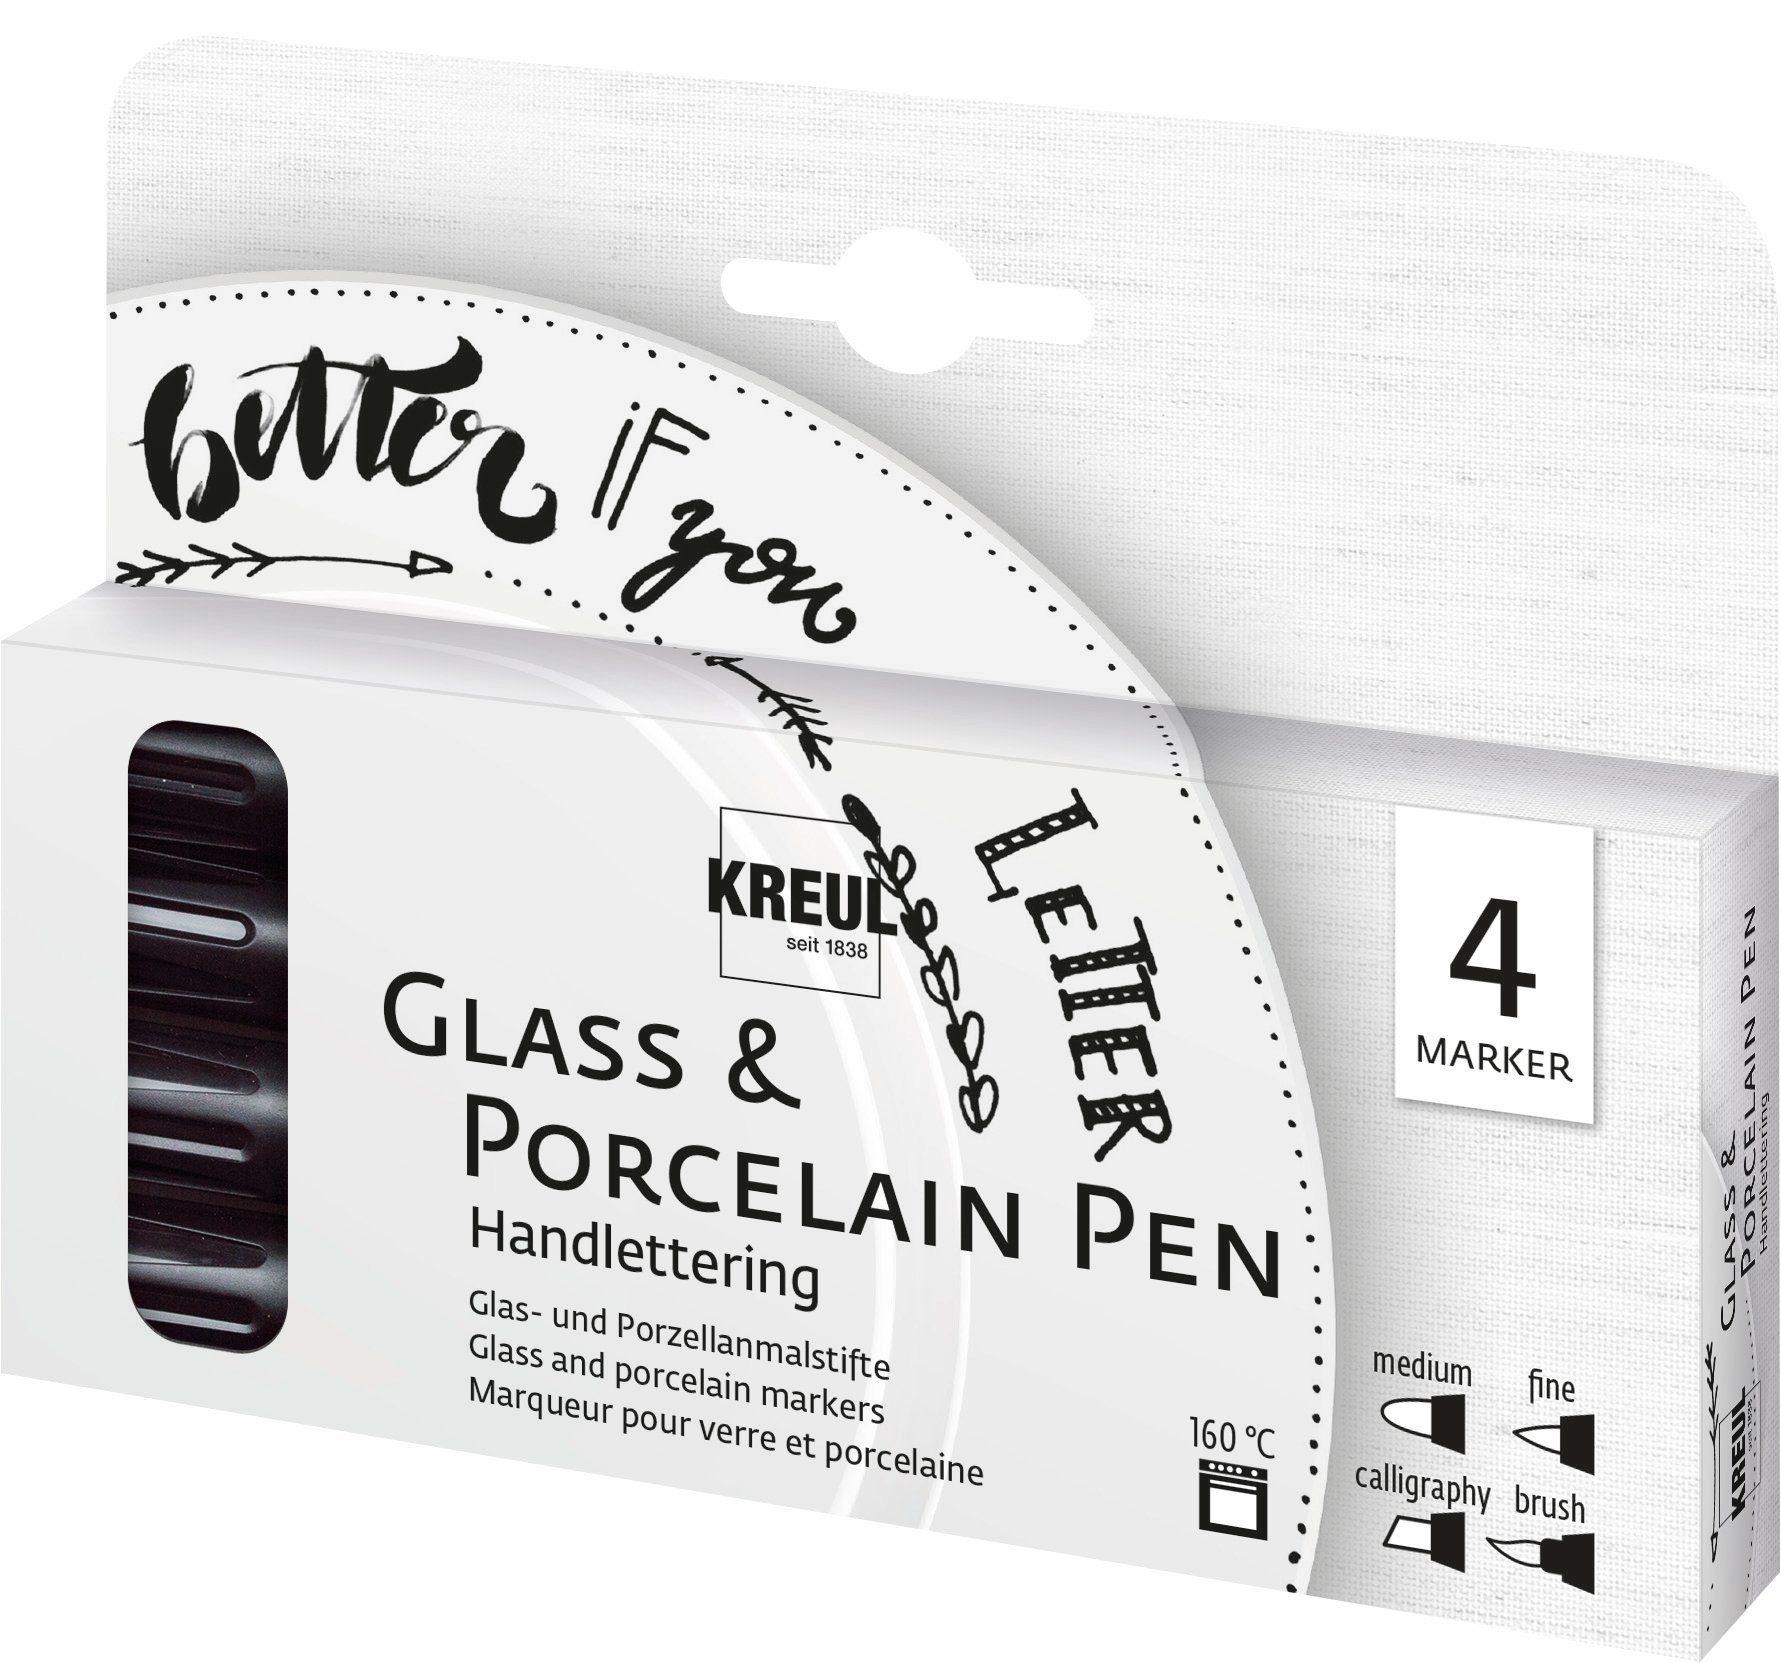 Kreul Lackmarker Glass & Porcelain Pen Handlettering, 4er-Set